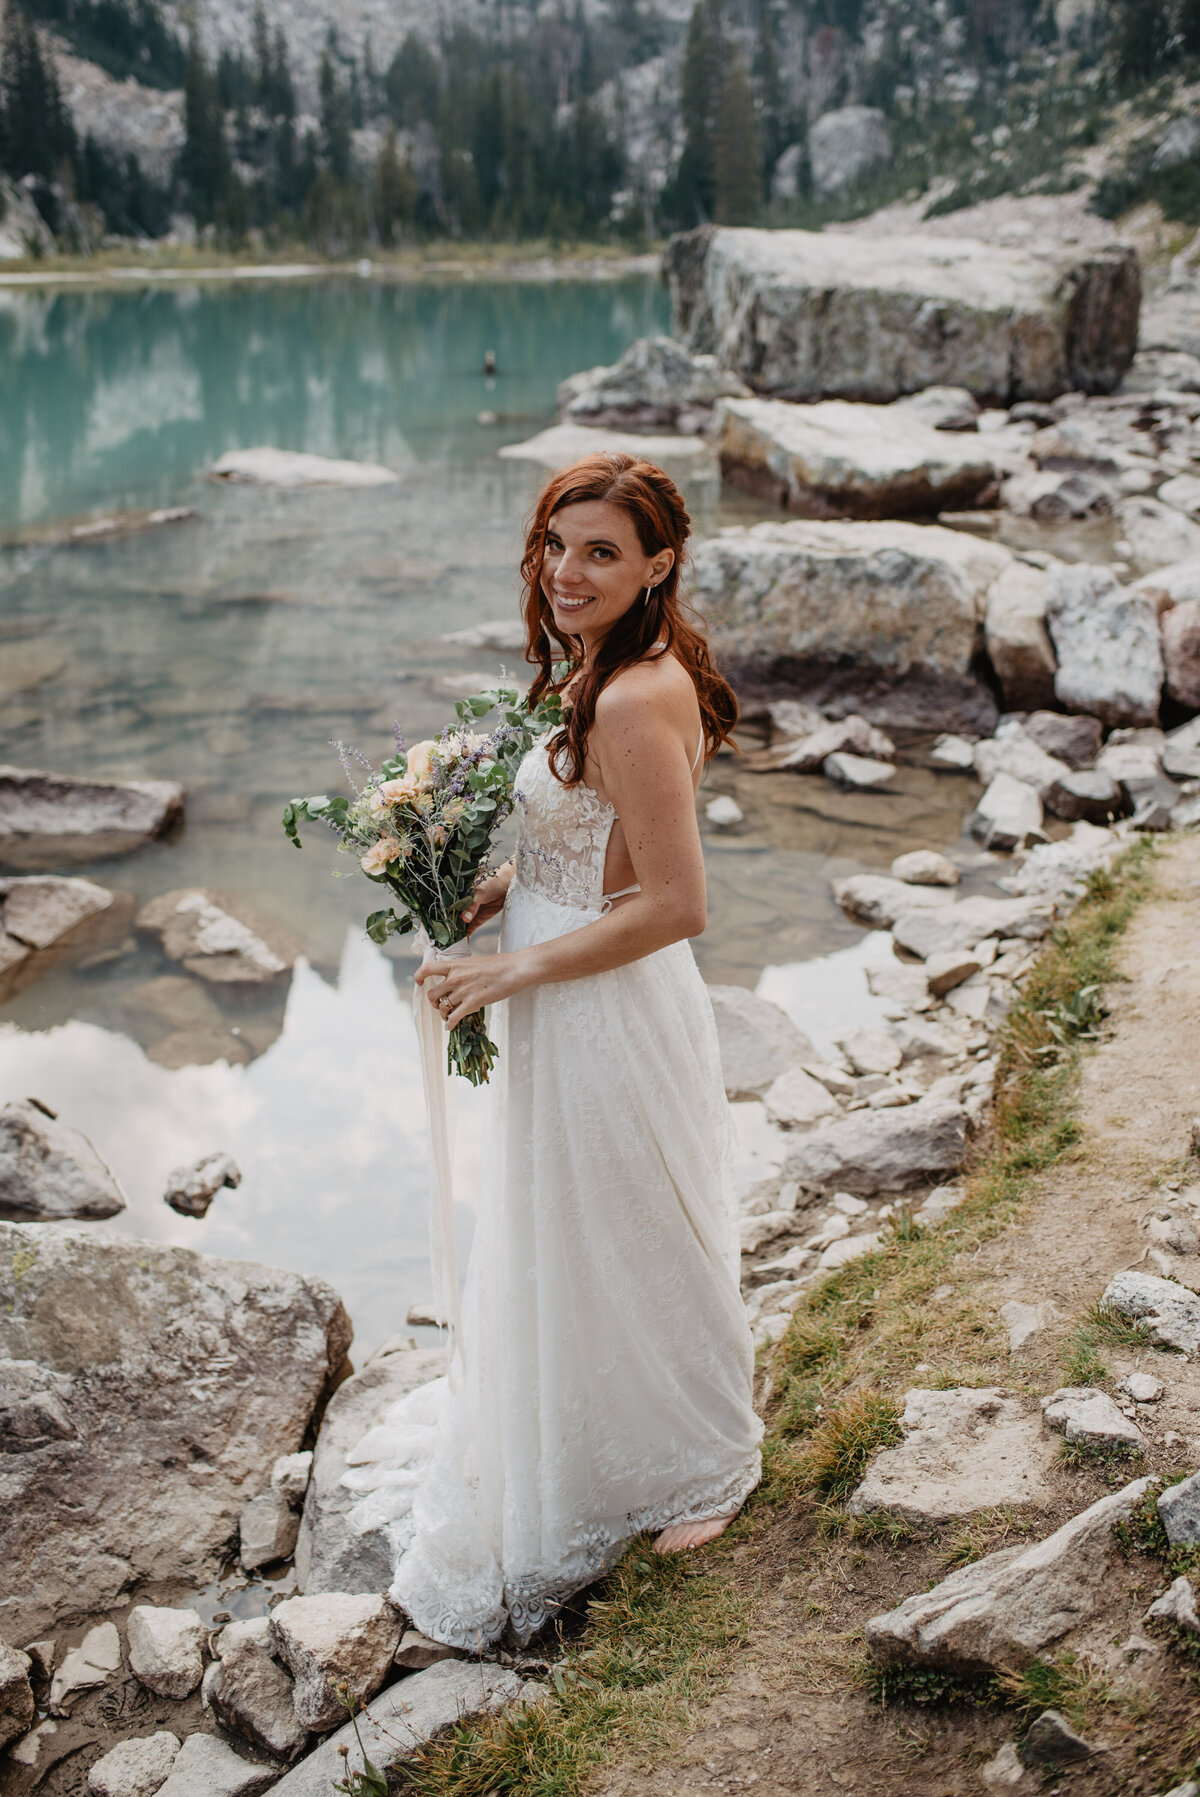 Jackson Hole Photographers capture bridal portrait of bride holding bridal bouquet